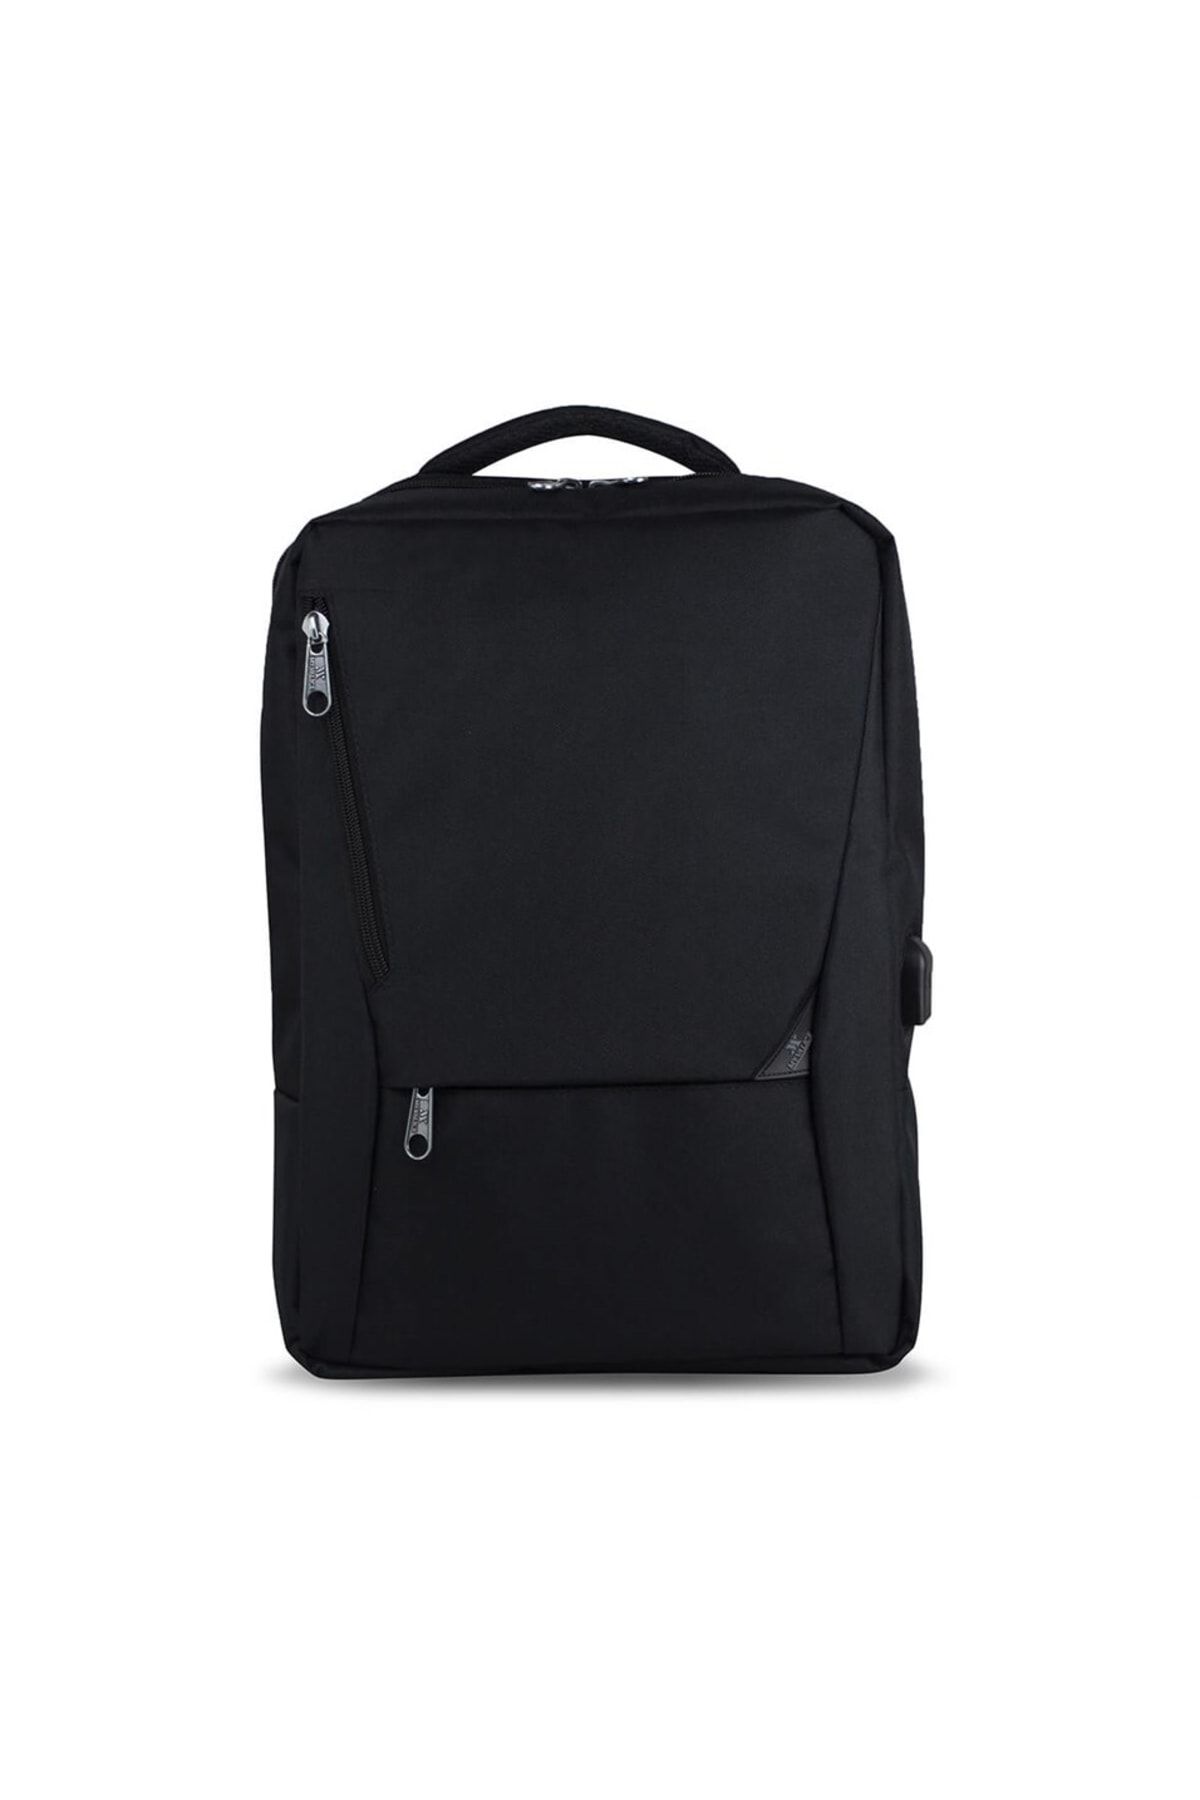 Smart Bag Active Usb Şarj Girişli Slim Notebook Laptop Sırt Çantası Siyah